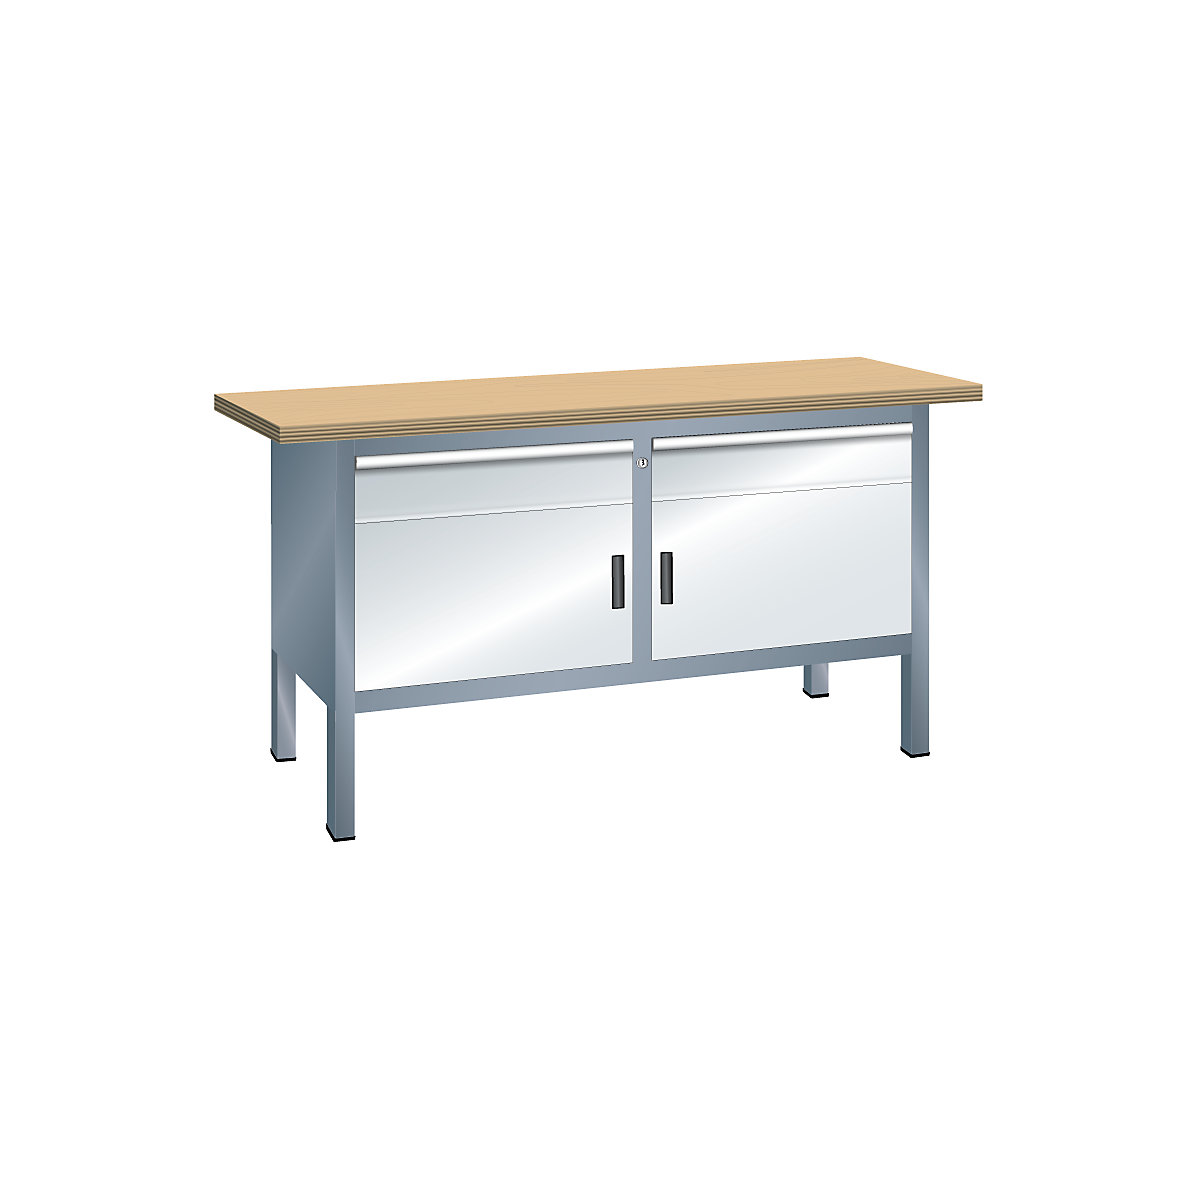 Stół warsztatowy z blatem z litego buku, konstrukcja ramowa – LISTA, szer. 1500 mm, 2 szuflady, 2 drzwi, korpus szary metallic, front jasnoszary-3